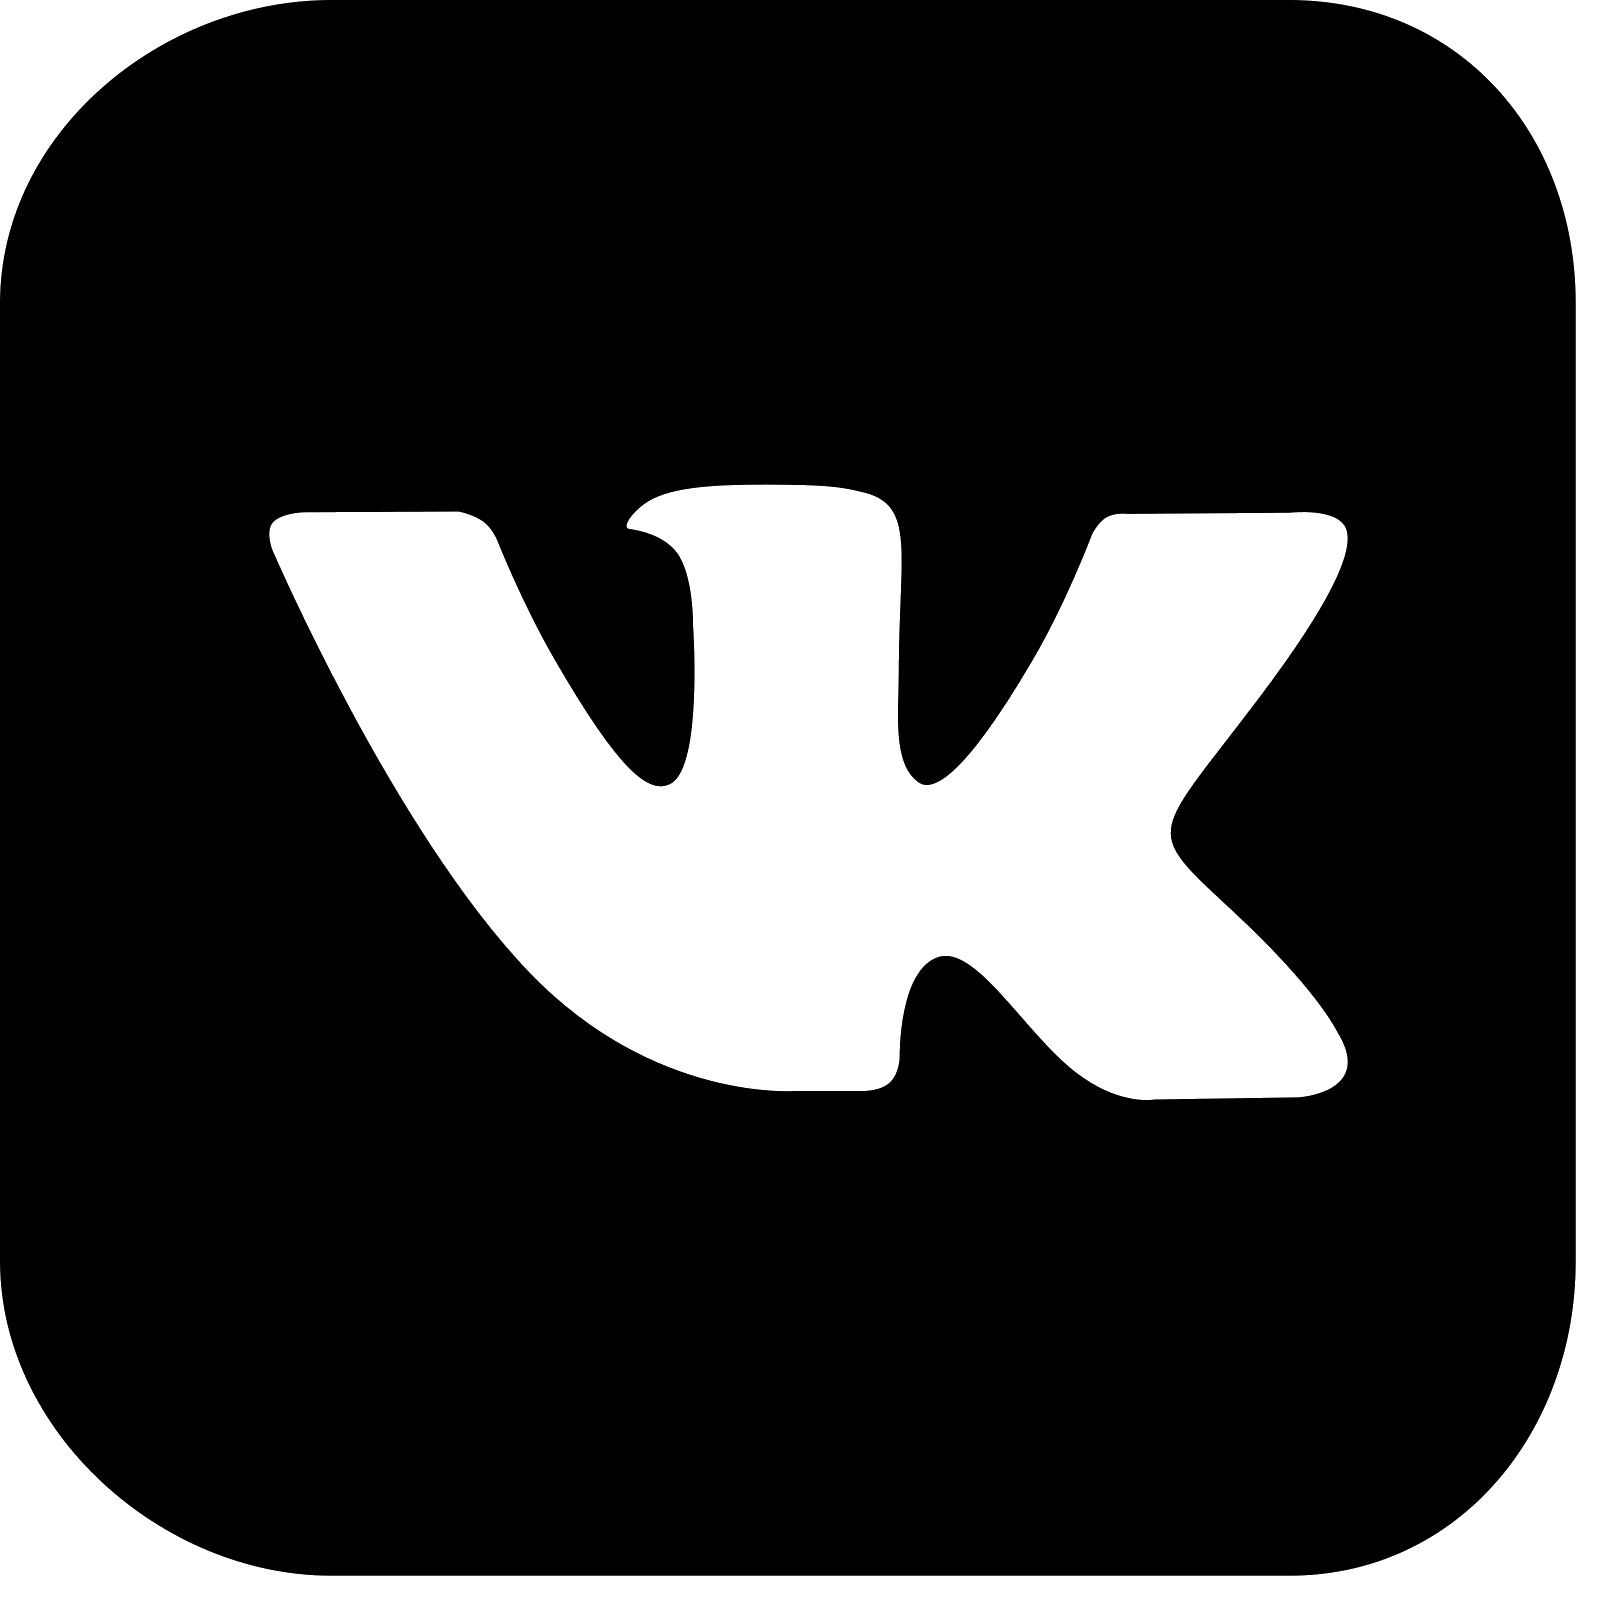 Vk com atomicrust. Логотип ВК. Маленький значок ВК. Логотип ВК черный. Логотип ВК без фона.